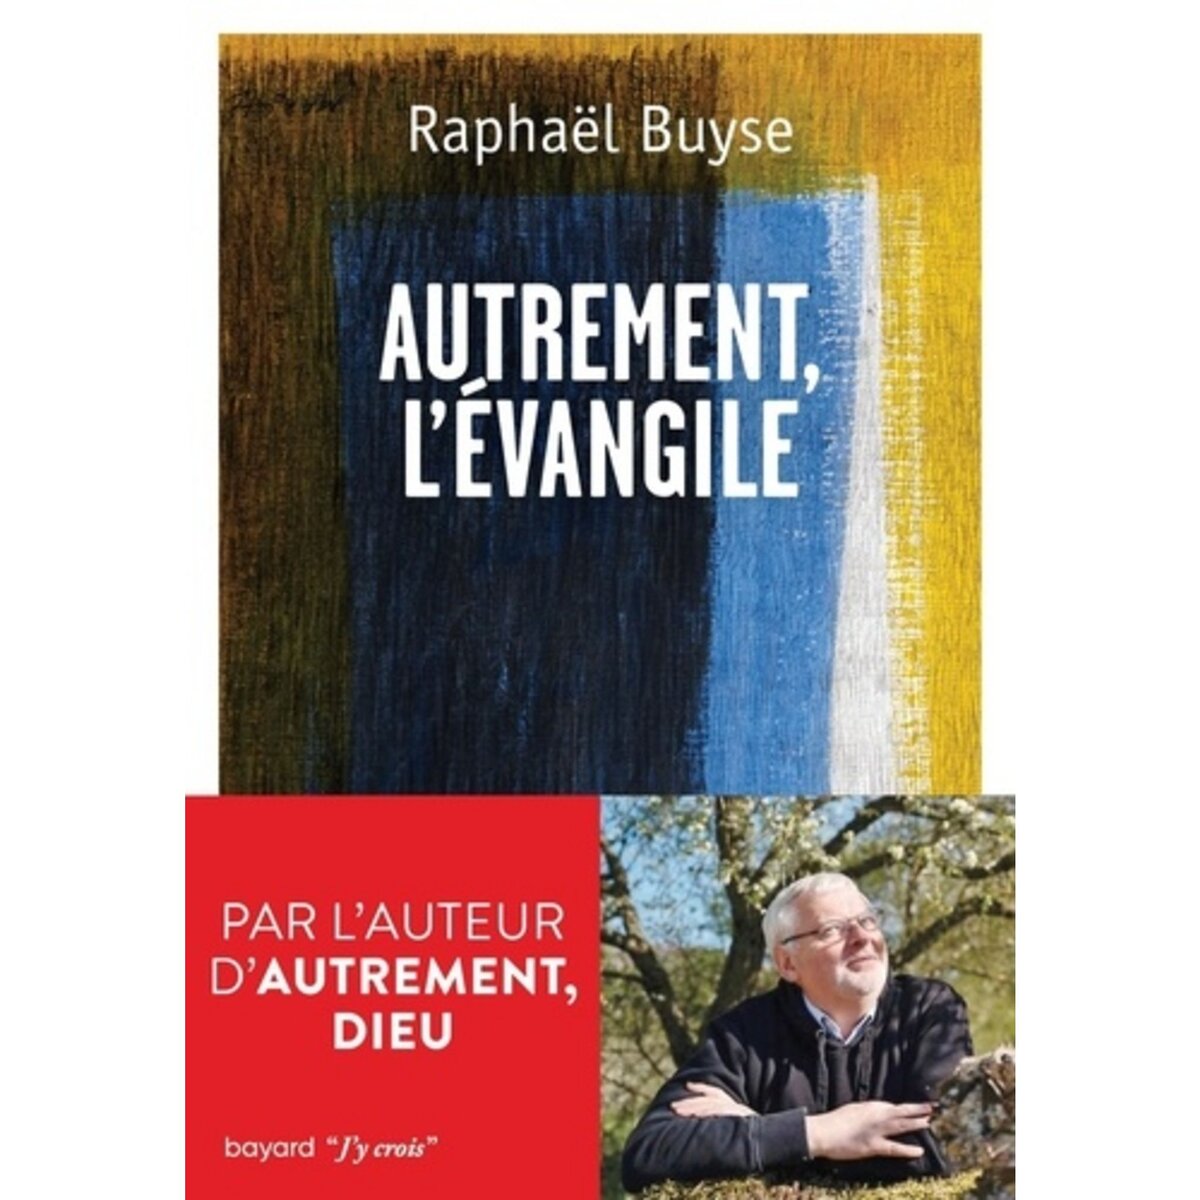  AUTREMENT, L'EVANGILE, Buyse Raphaël